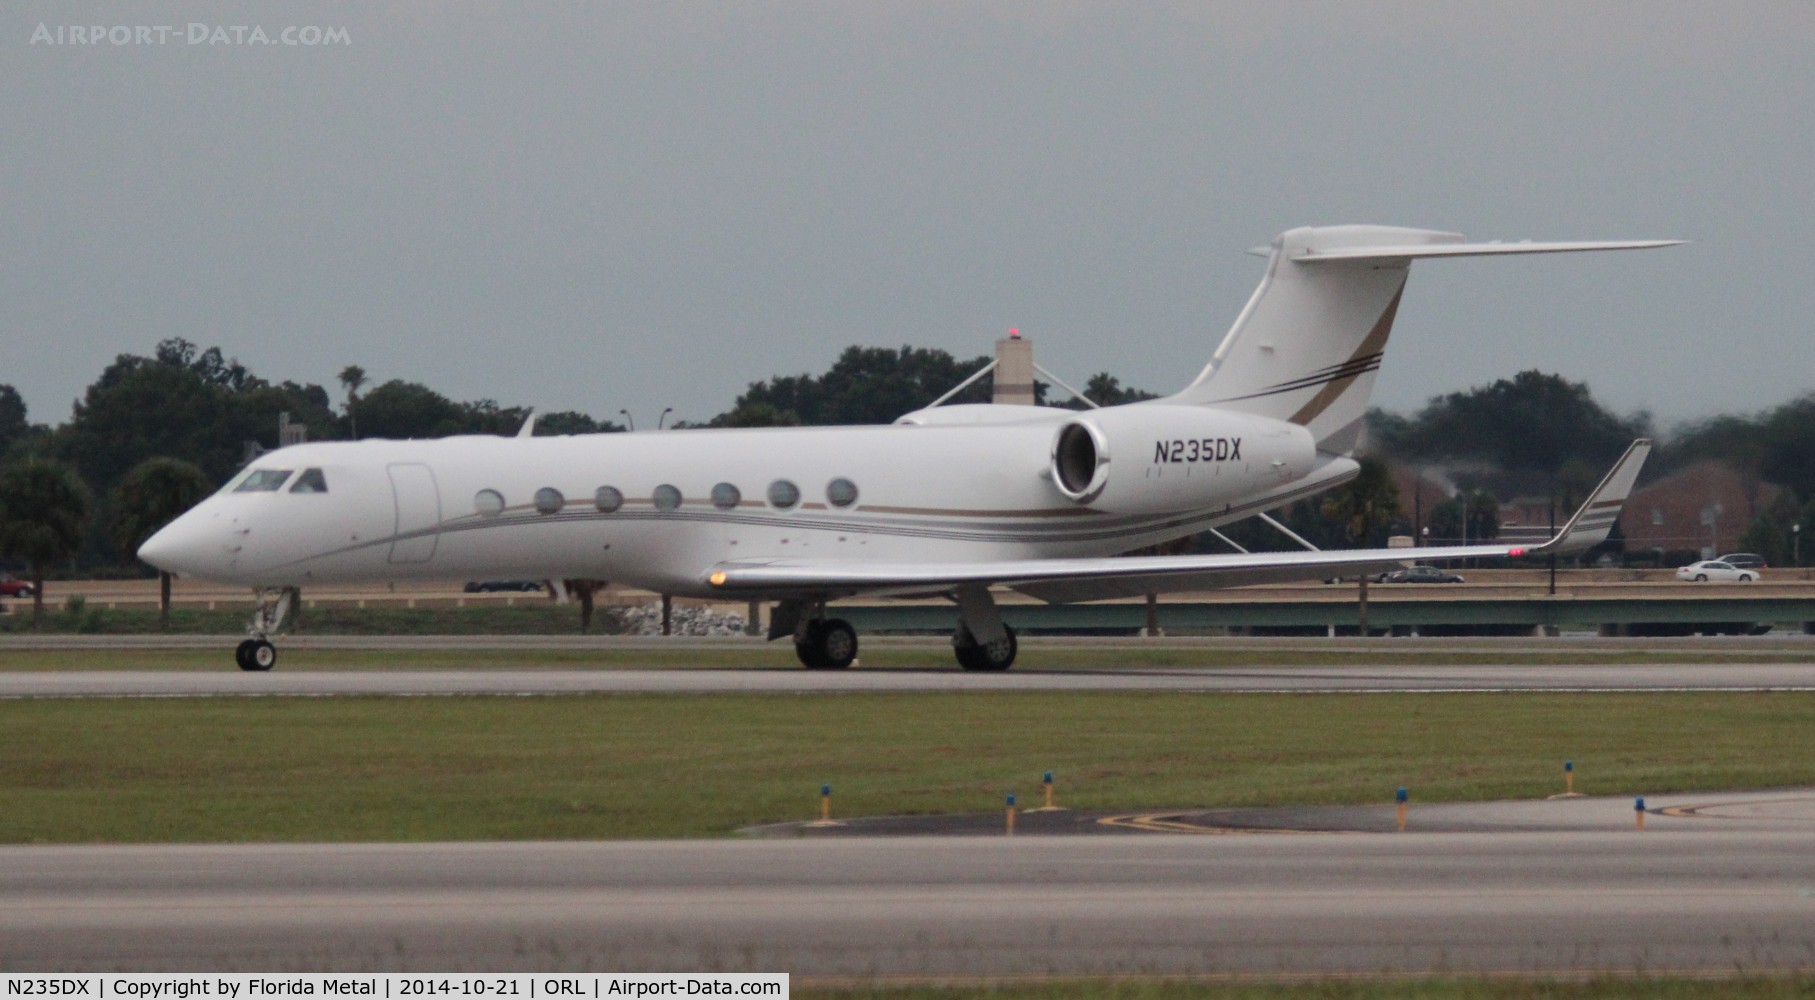 N235DX, 2005 Gulfstream Aerospace GV-SP (G550) C/N 5085, Gulfstream 550